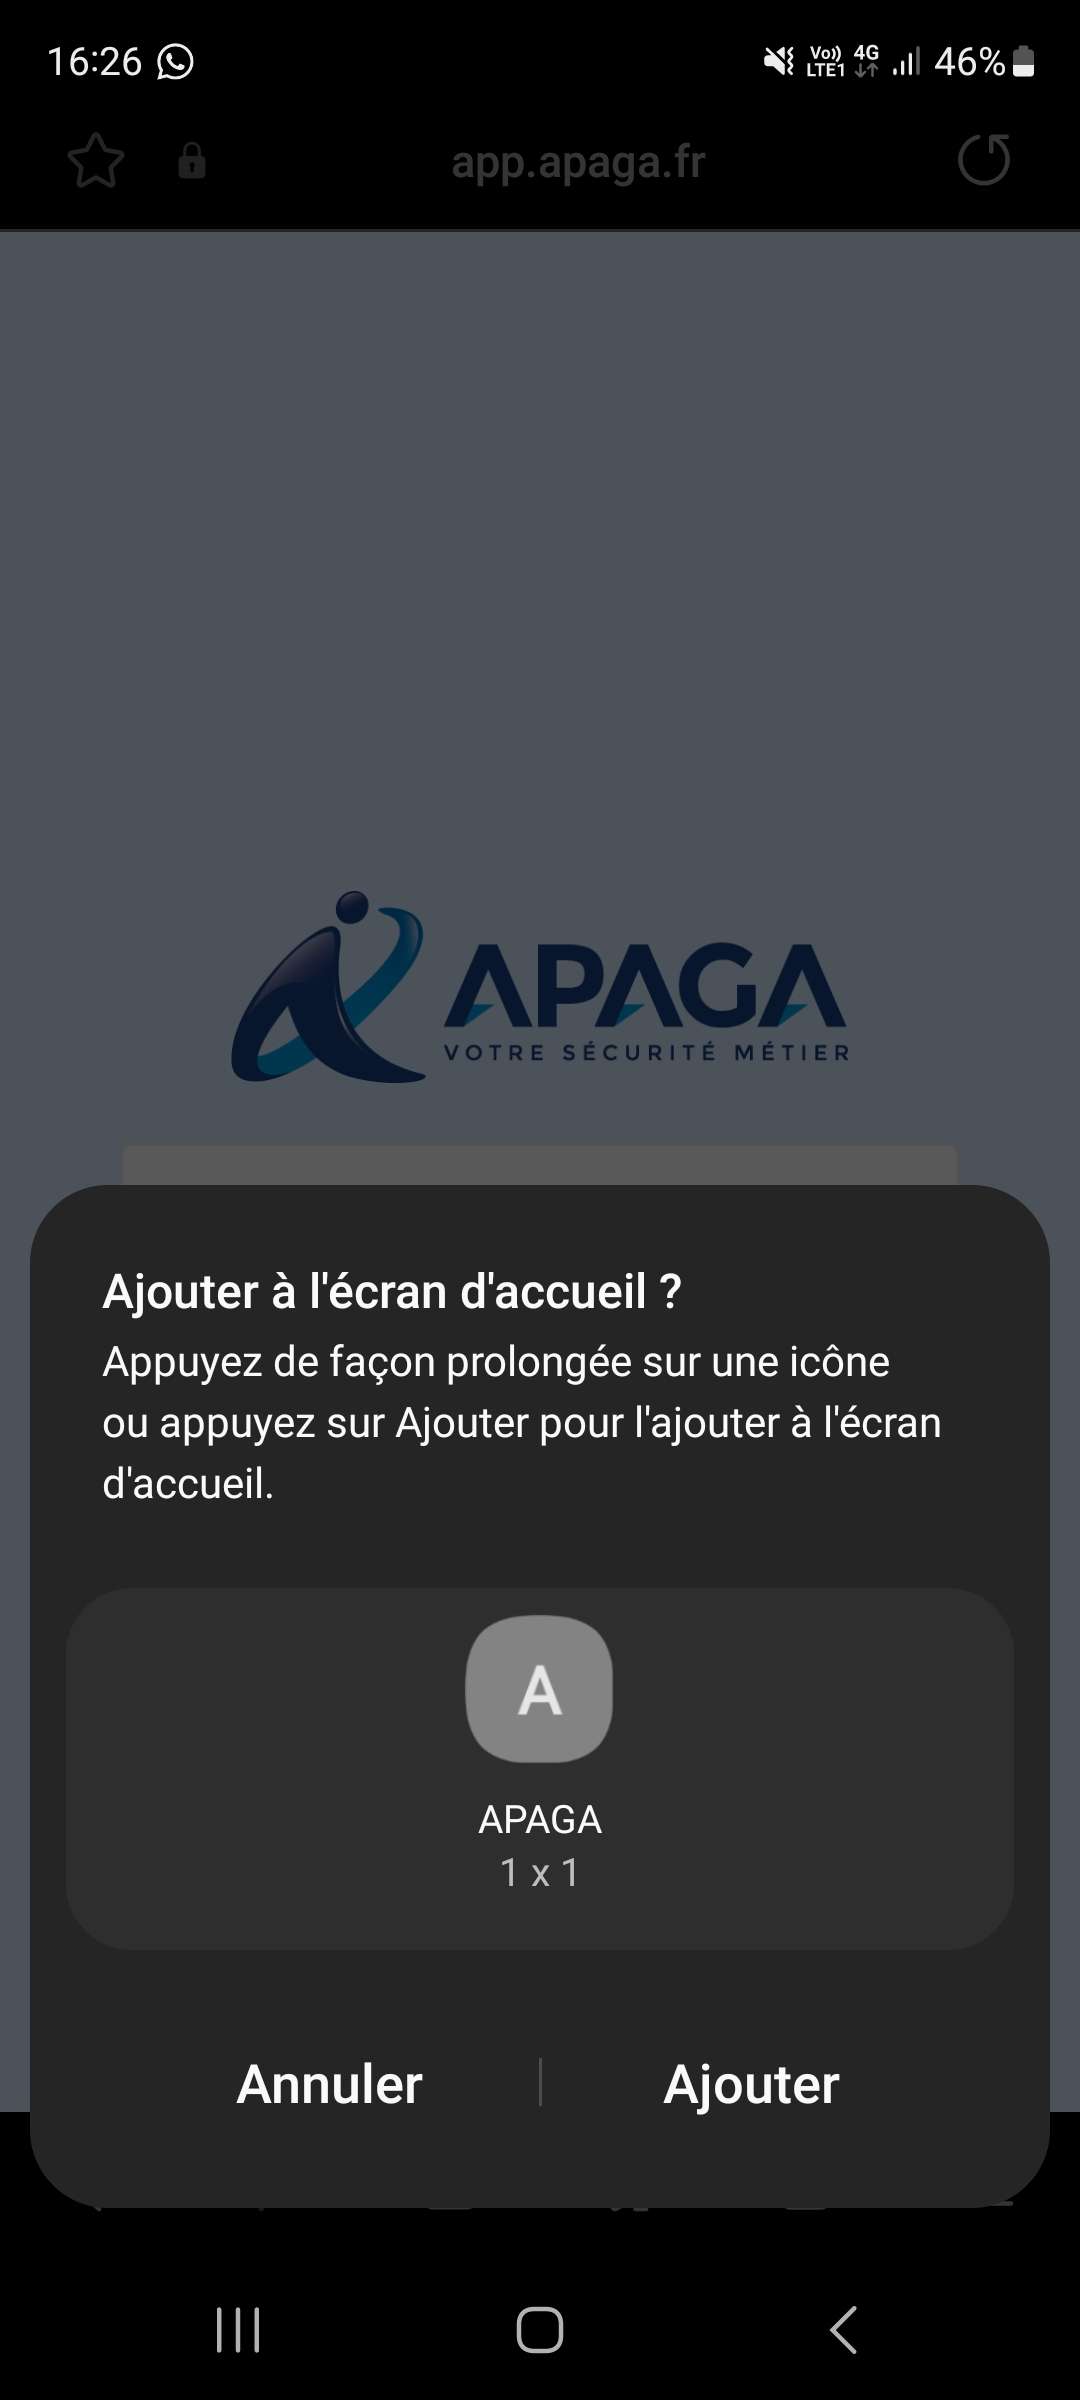 Ajouter APAGA android 4